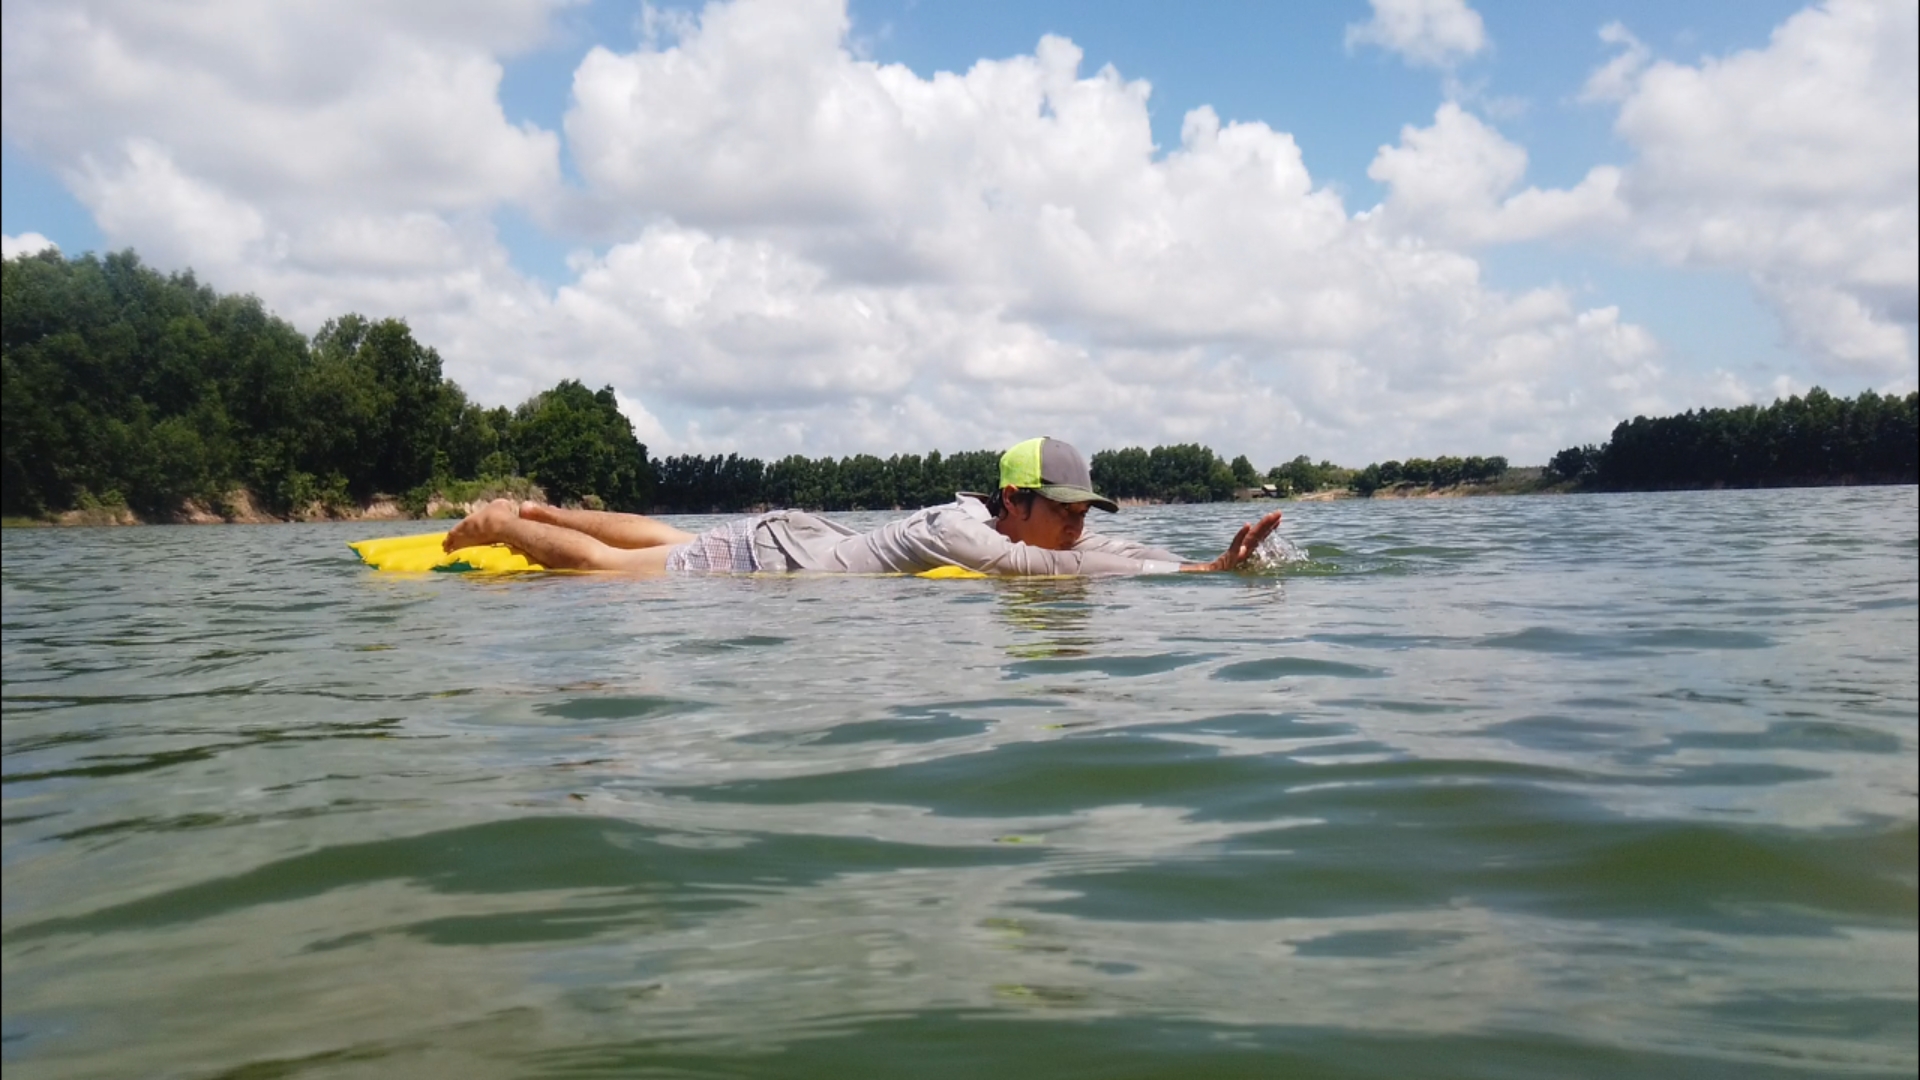 Review một chiếc hồ siêu siêu đẹp, cách Sài Gòn chỉ 40km.